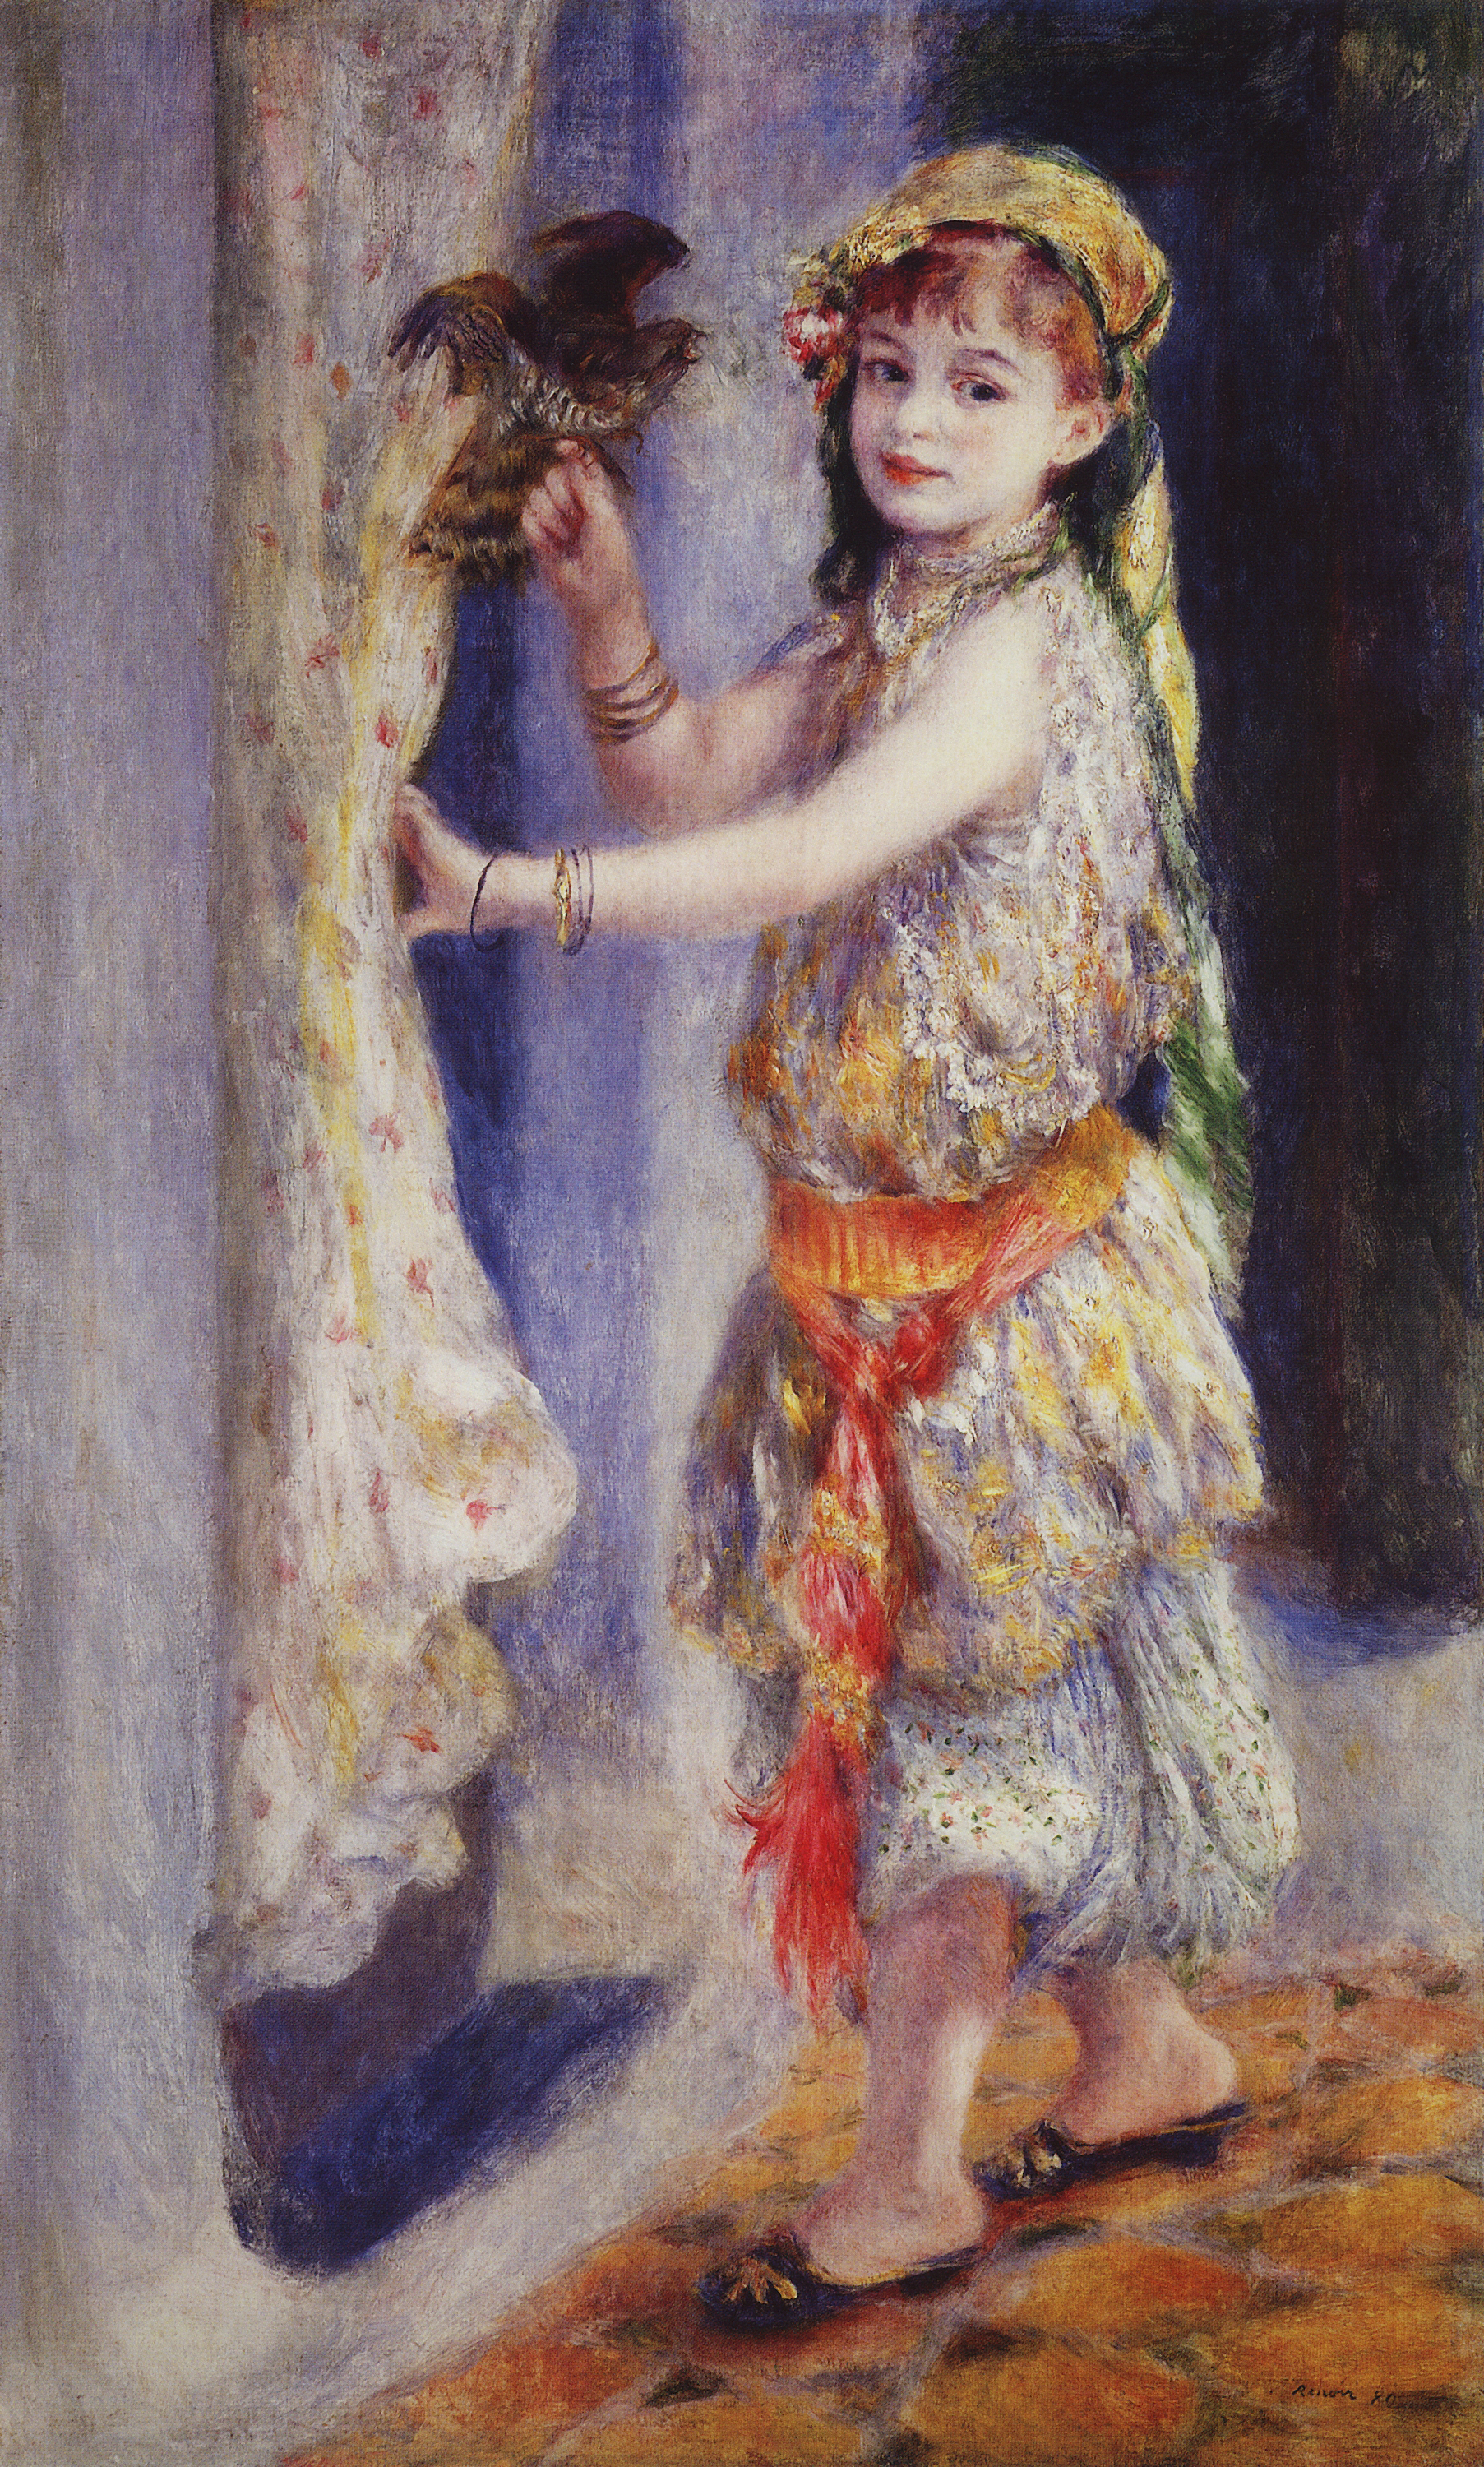 Ренуар. Девочка с соколом (Мадемаузель Флери в алжирском наряде). 1880